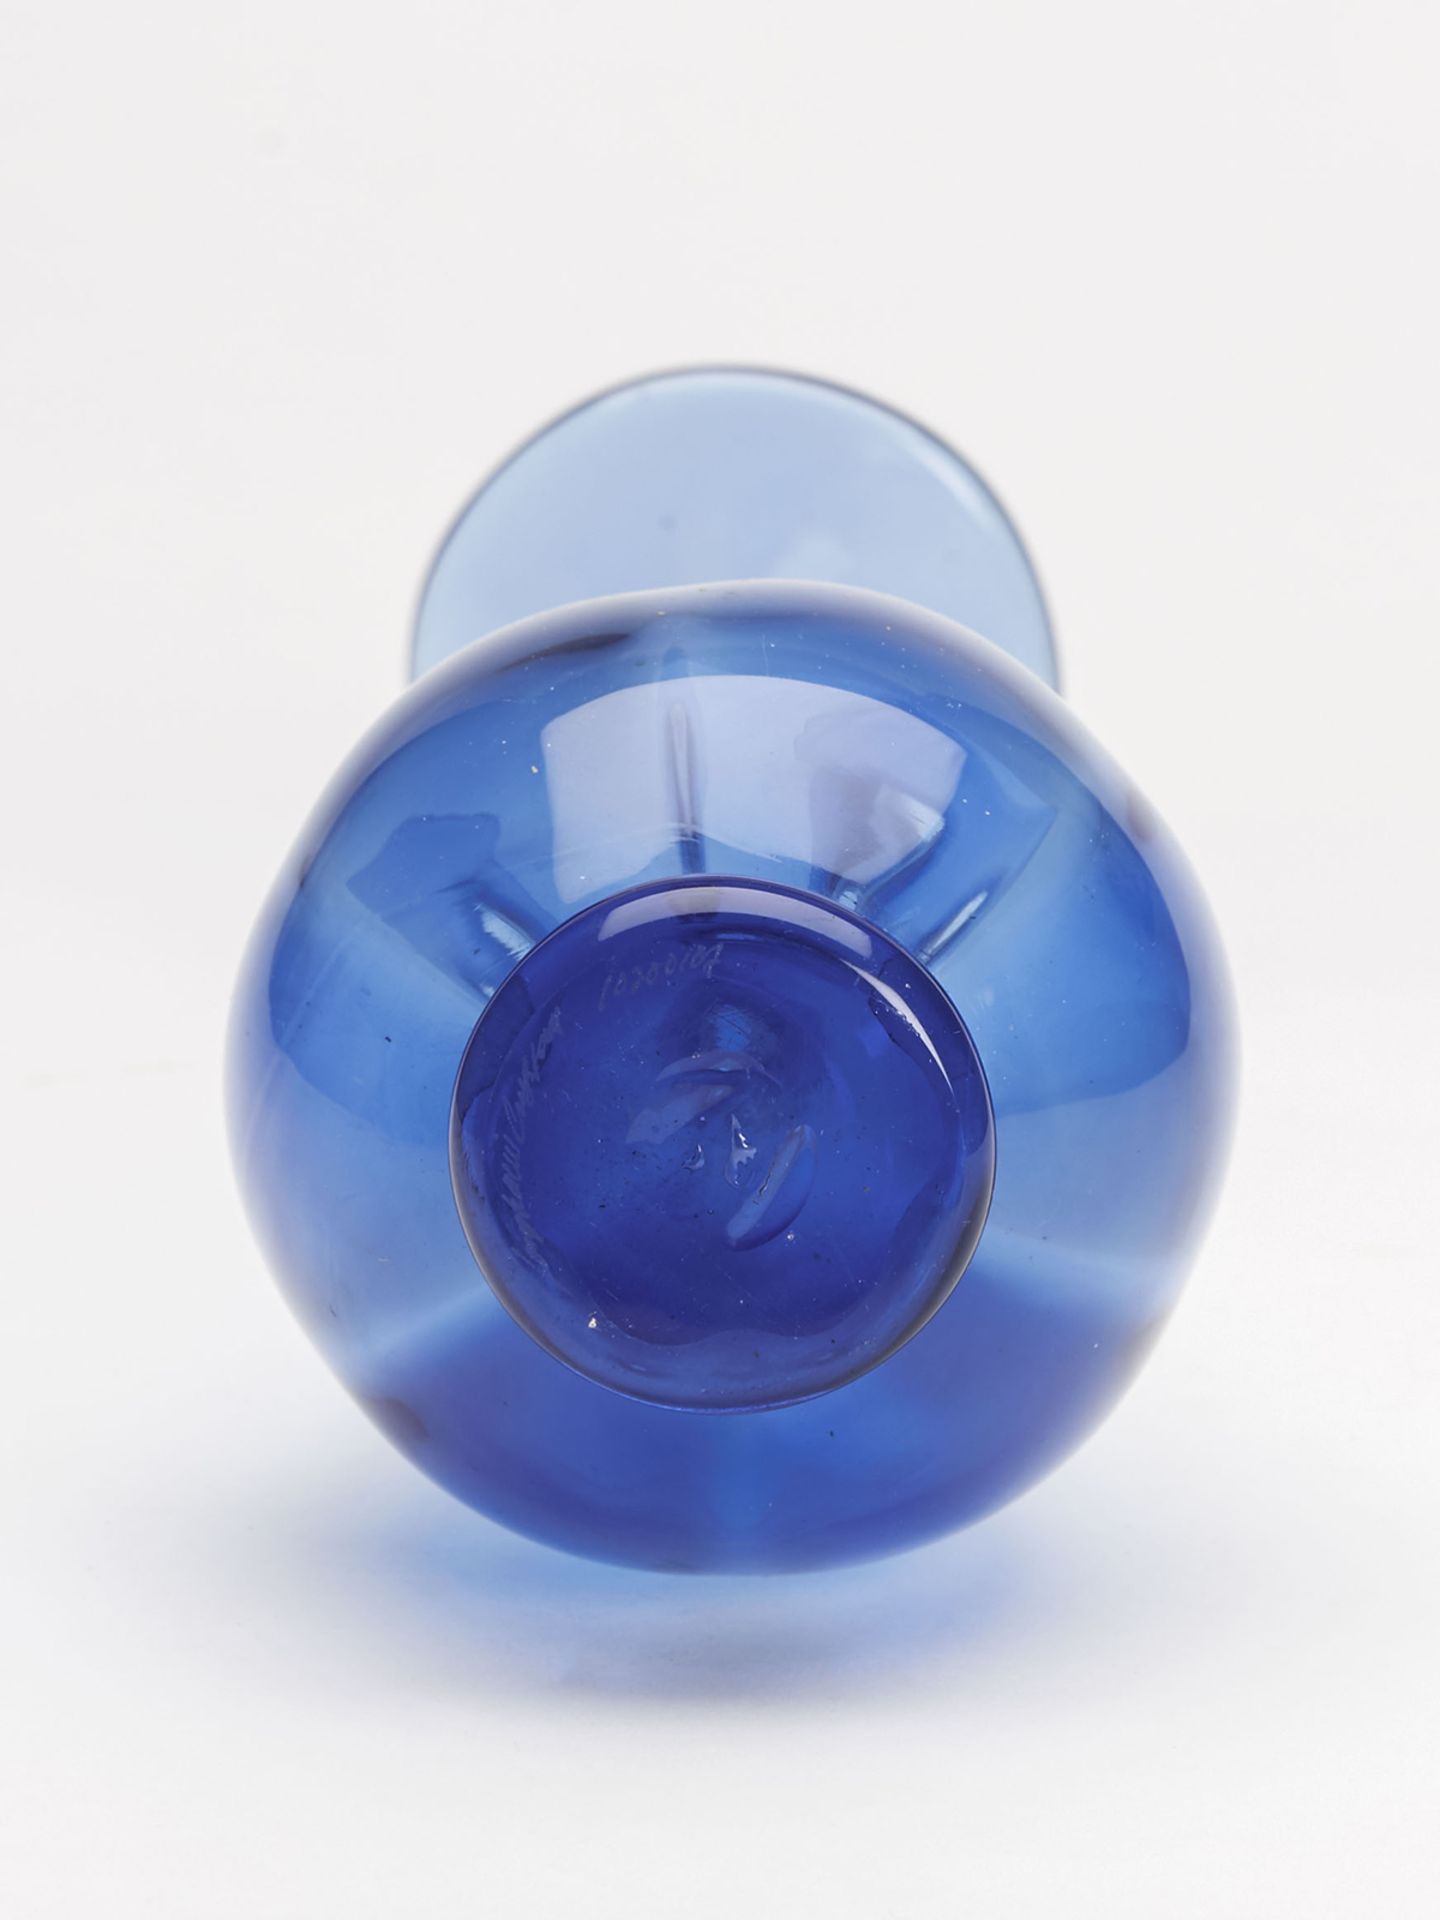 Vintage Signed Scandinavian? Blue Art Glass Vase 20Th C. - Image 3 of 5